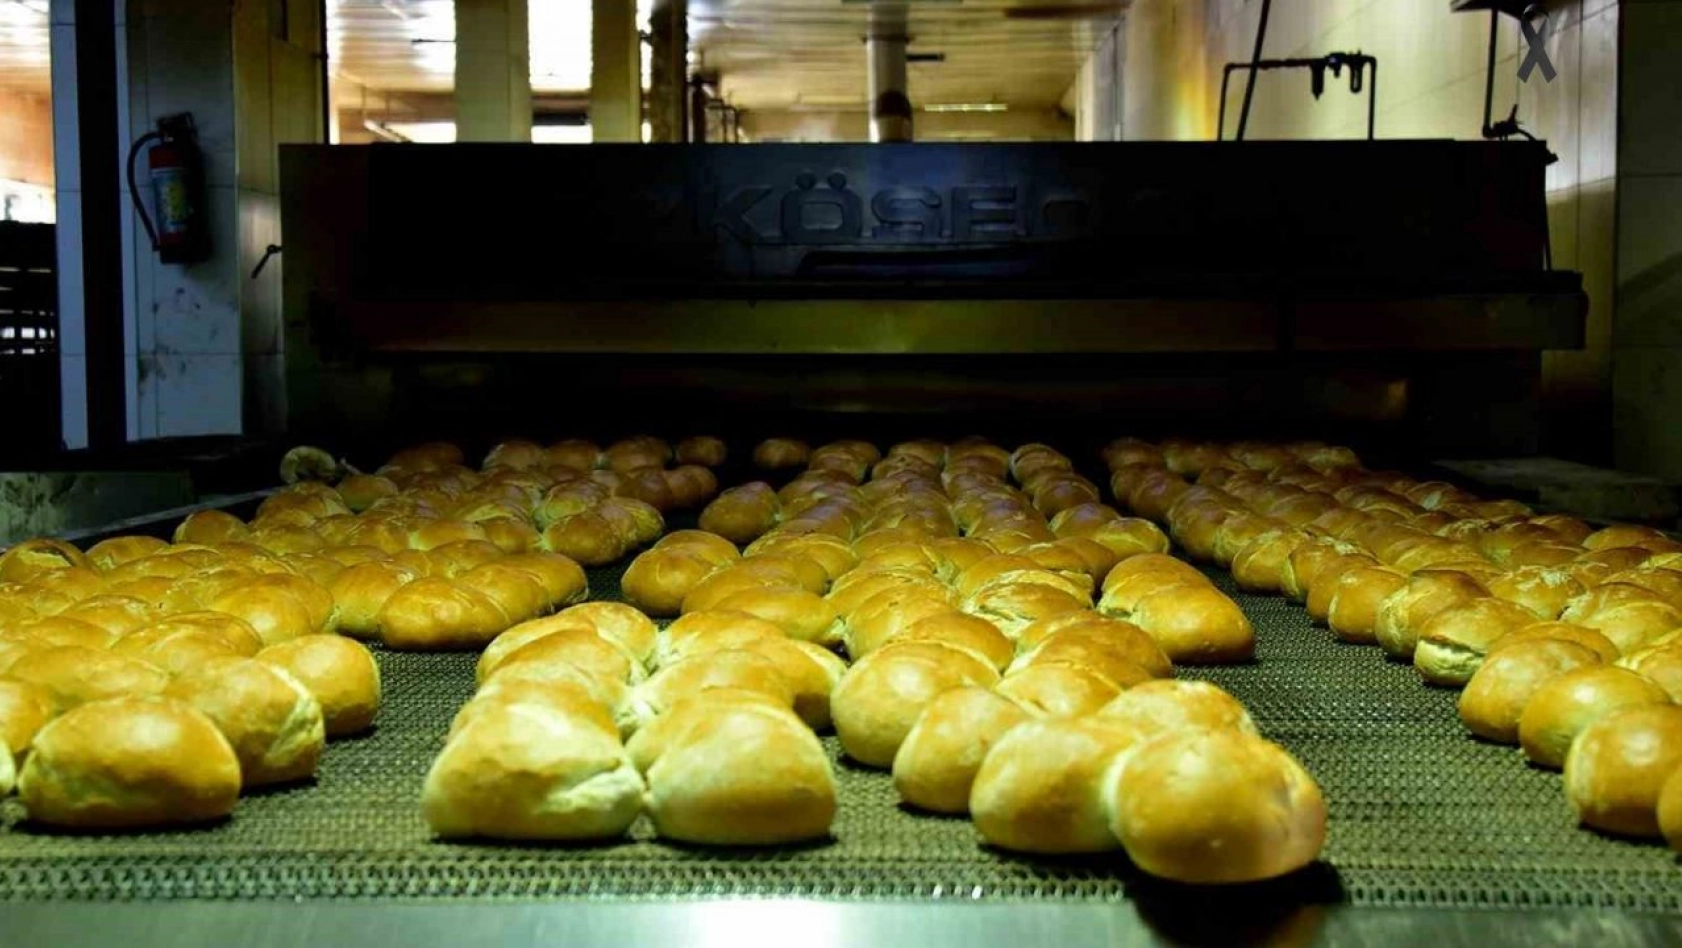 MEGSAŞ günlük 250 bin ekmek üretiyor